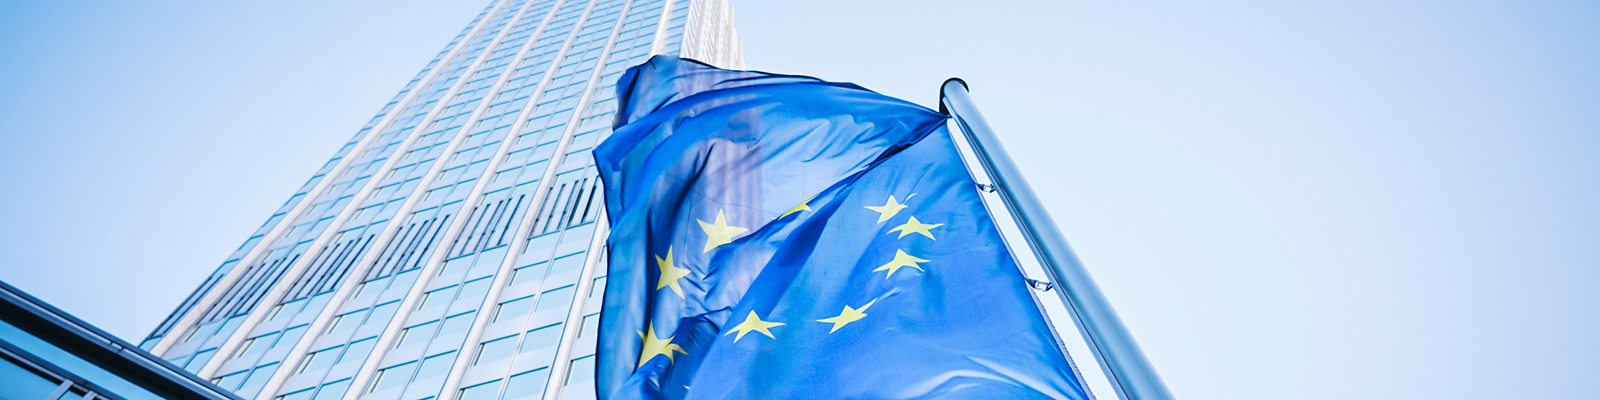 EU-Flagge zu Europäische Wirtschaftspolitik; Quelle: iStock.com/instamatics